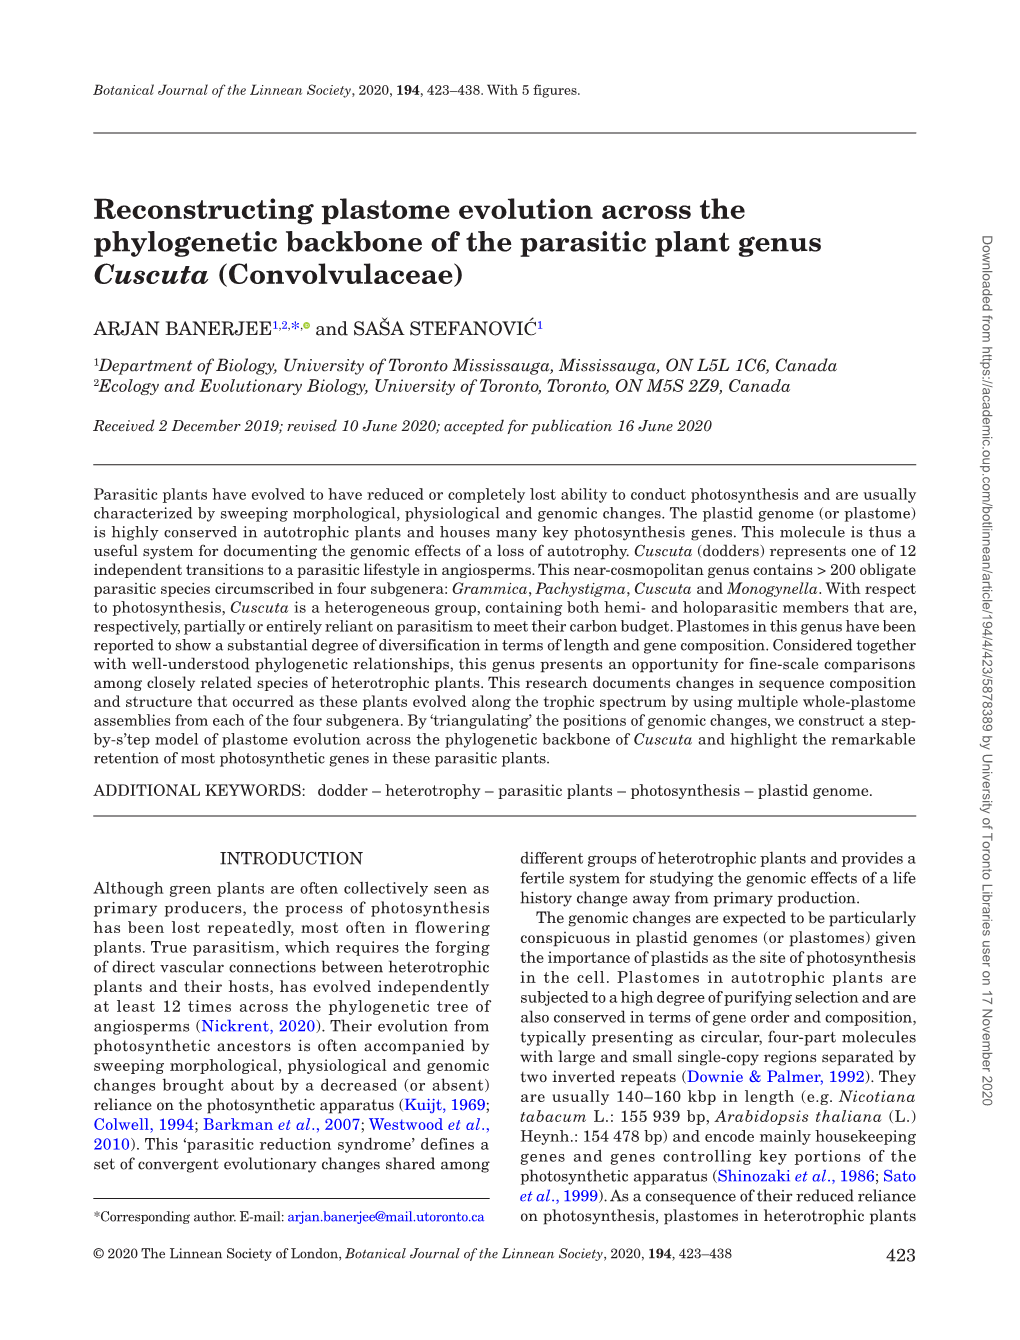 Reconstructing Plastome Evolution Across the Phylogenetic Backbone